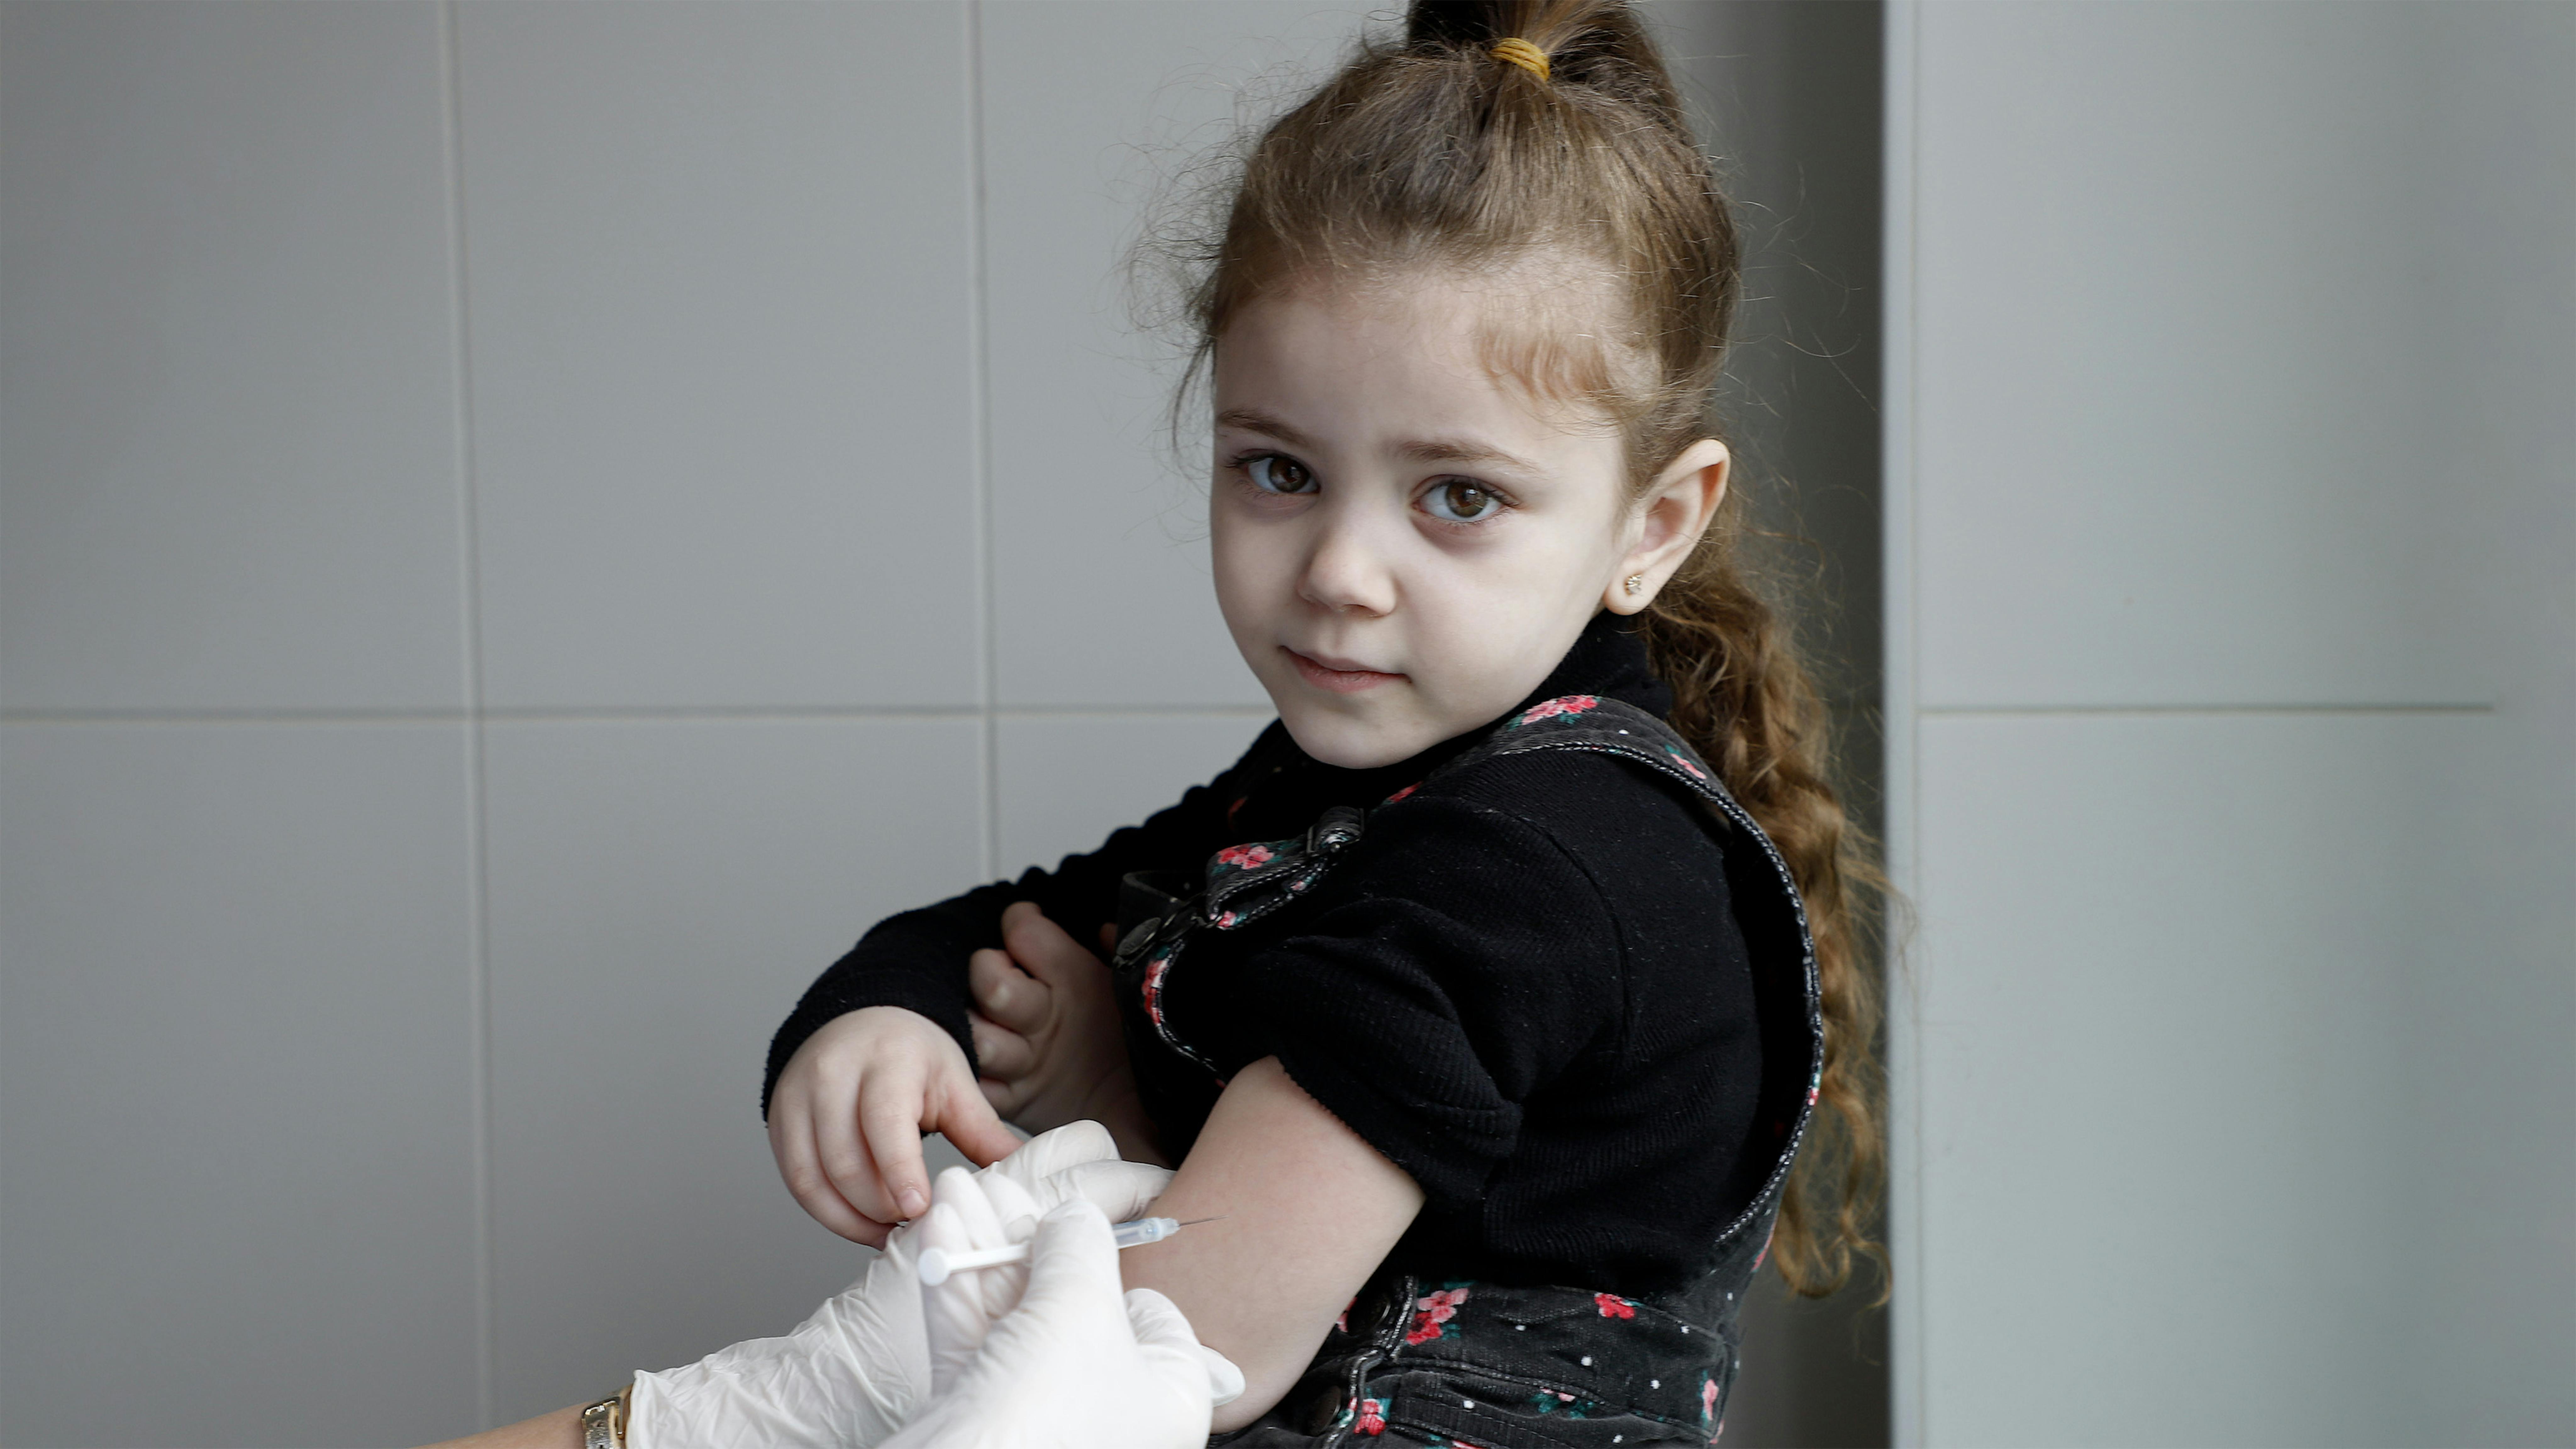 Armenia - La bambina sta ricevendo la vaccinazione di routine presso il policlinico Muratsan di Yerevan, sostenuto dall'UNICEF.